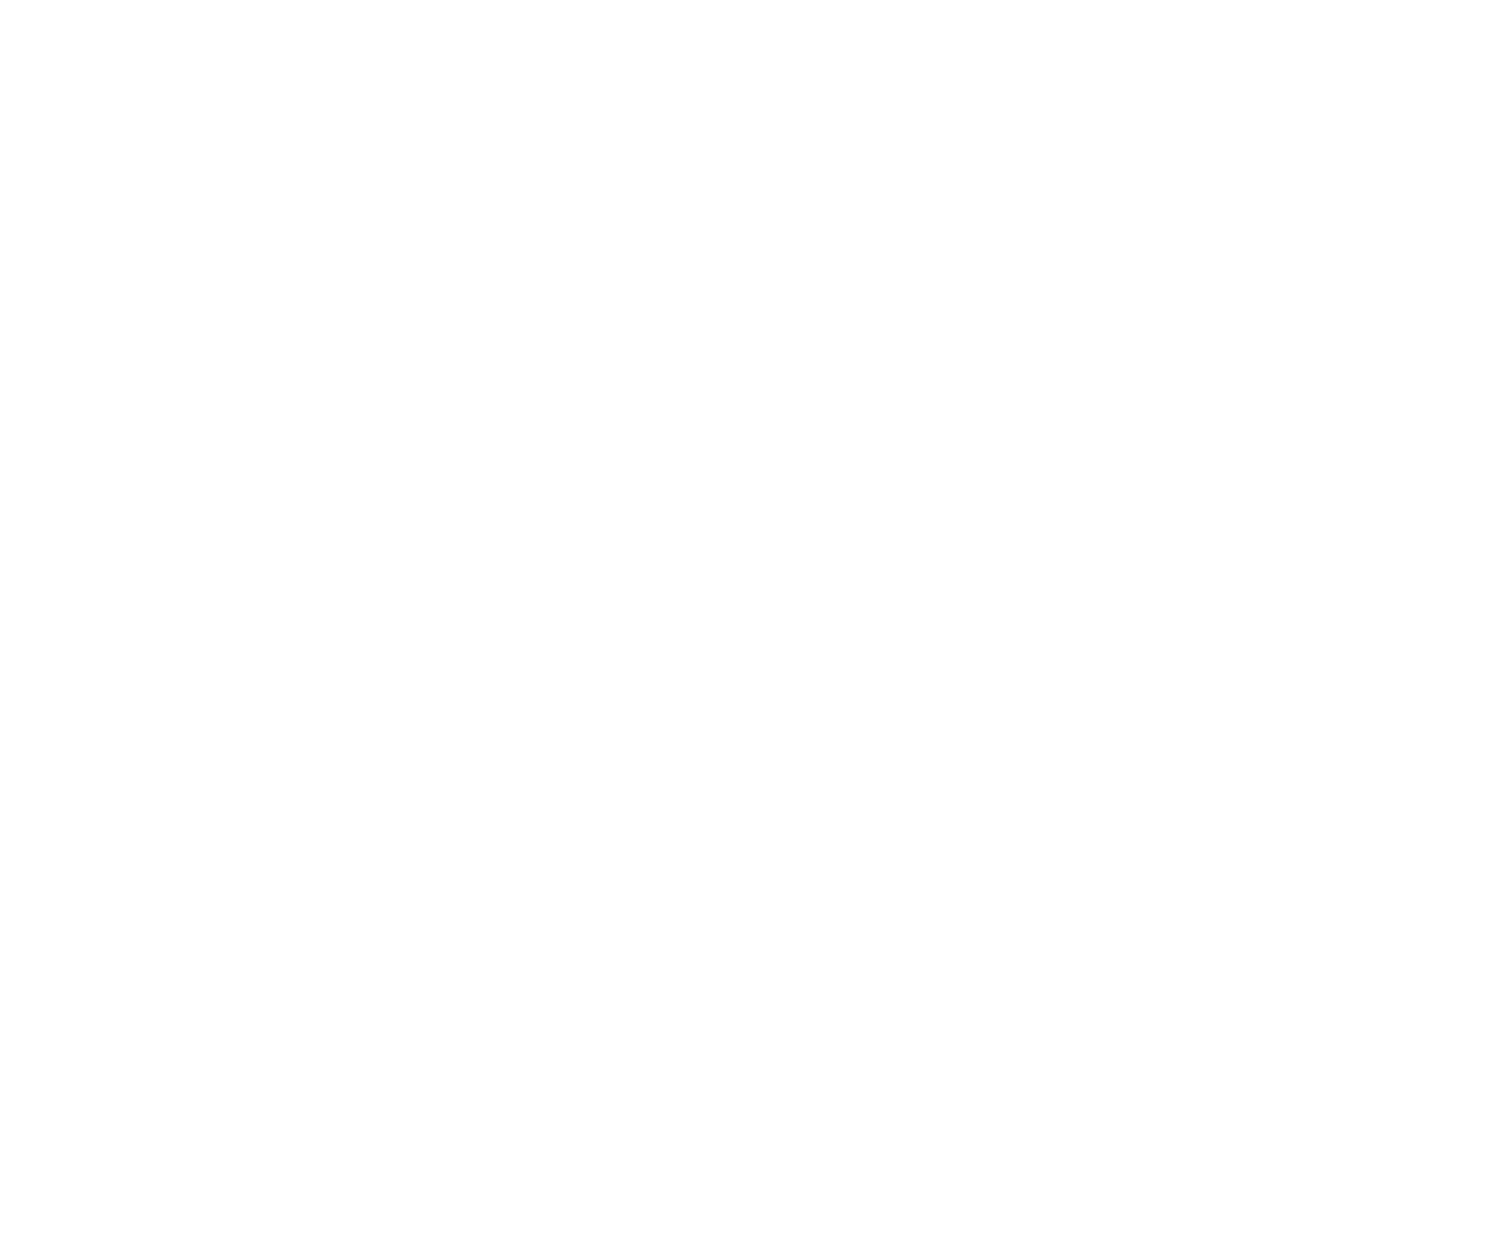 Informed Change